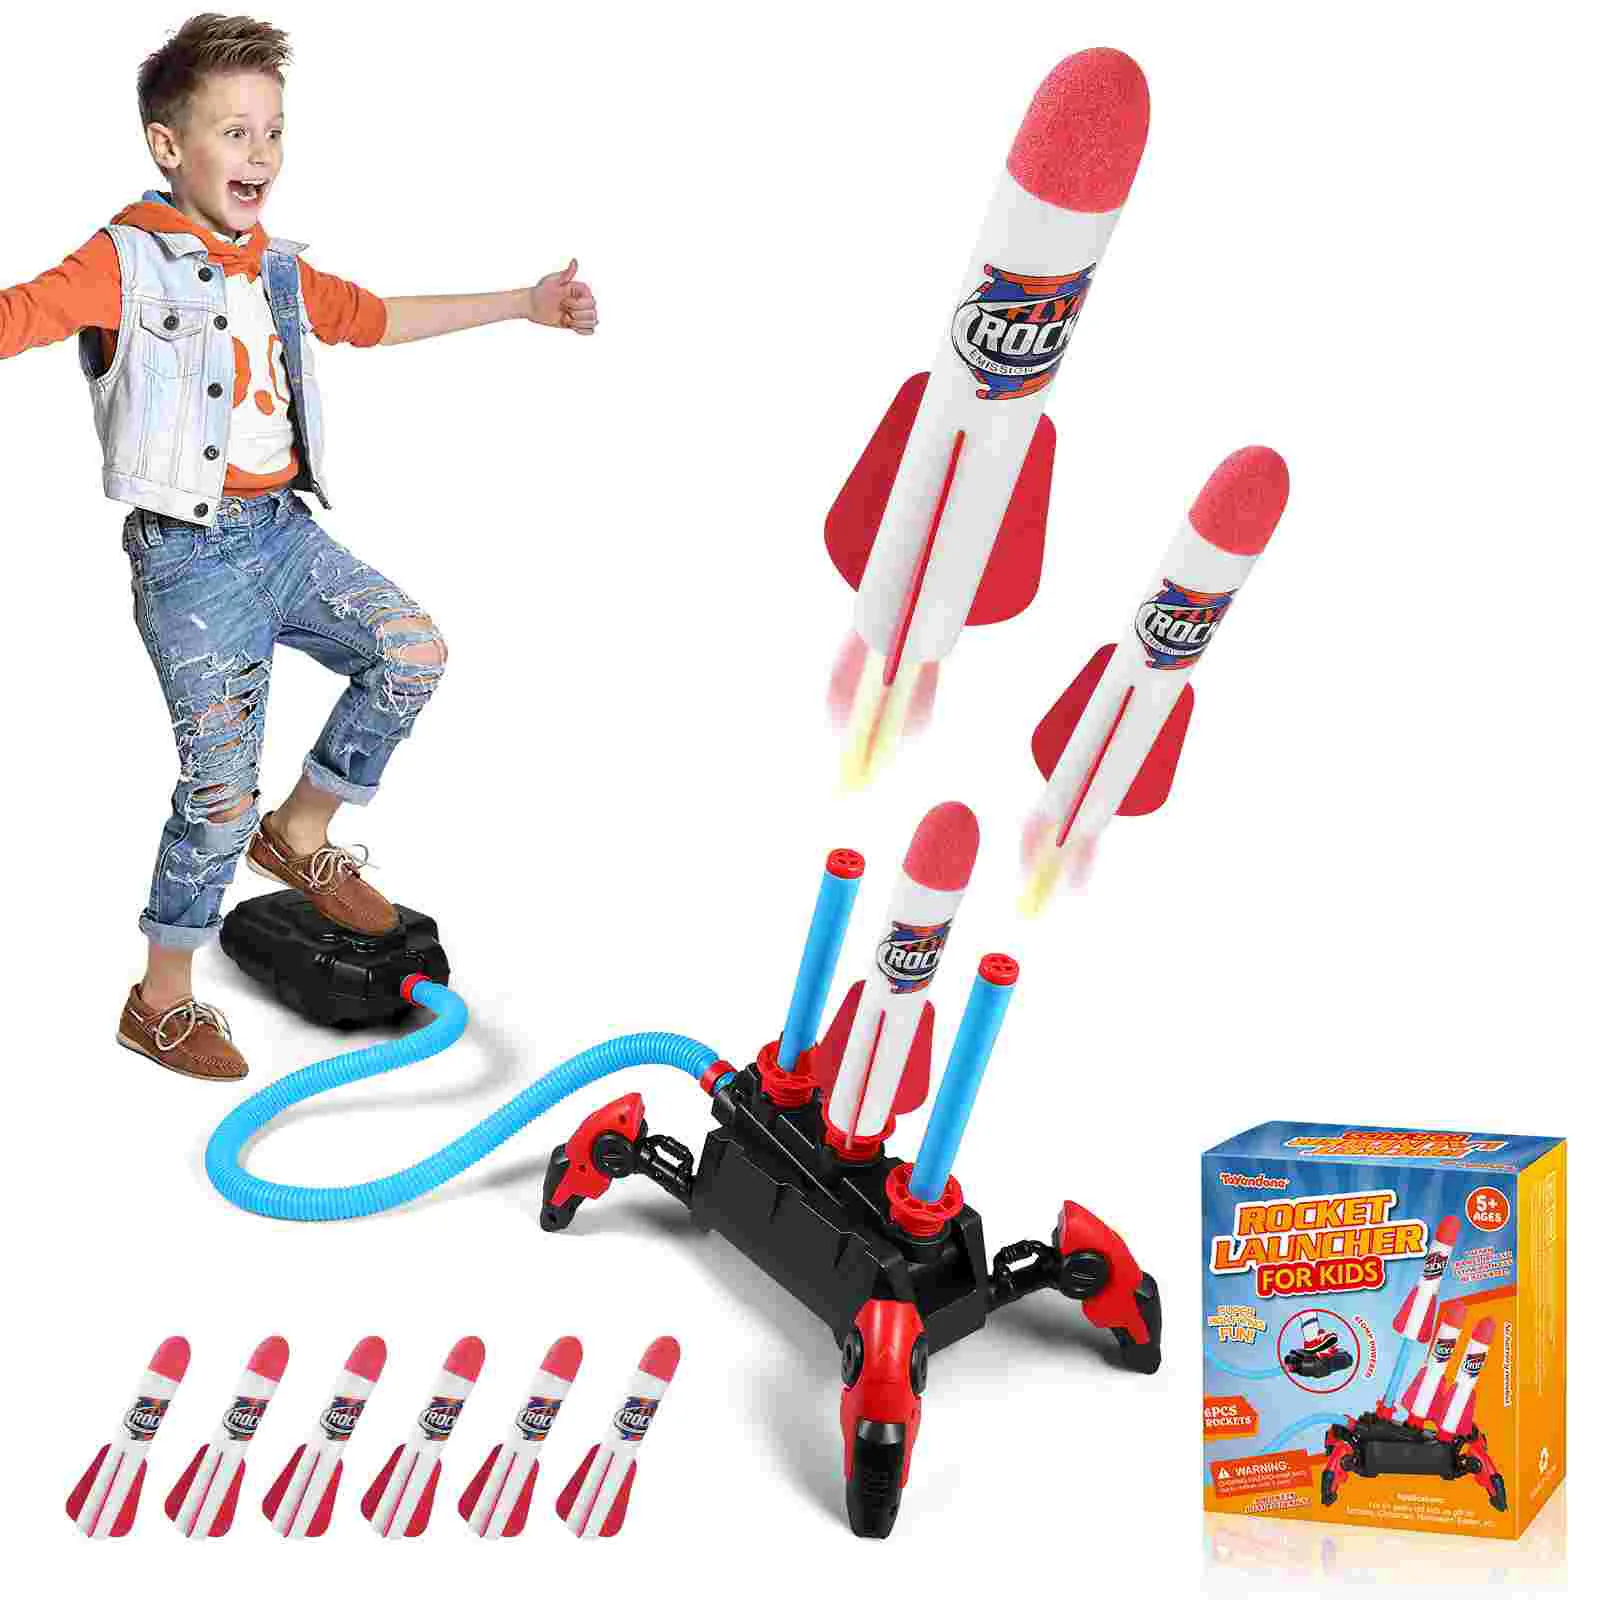 

Игрушка TOYANDONA для уличной ракетки, Детская воздушная ракетка, пусковая установка, пусковые ракеты из пенопласта, игрушечные пусковые ракеты